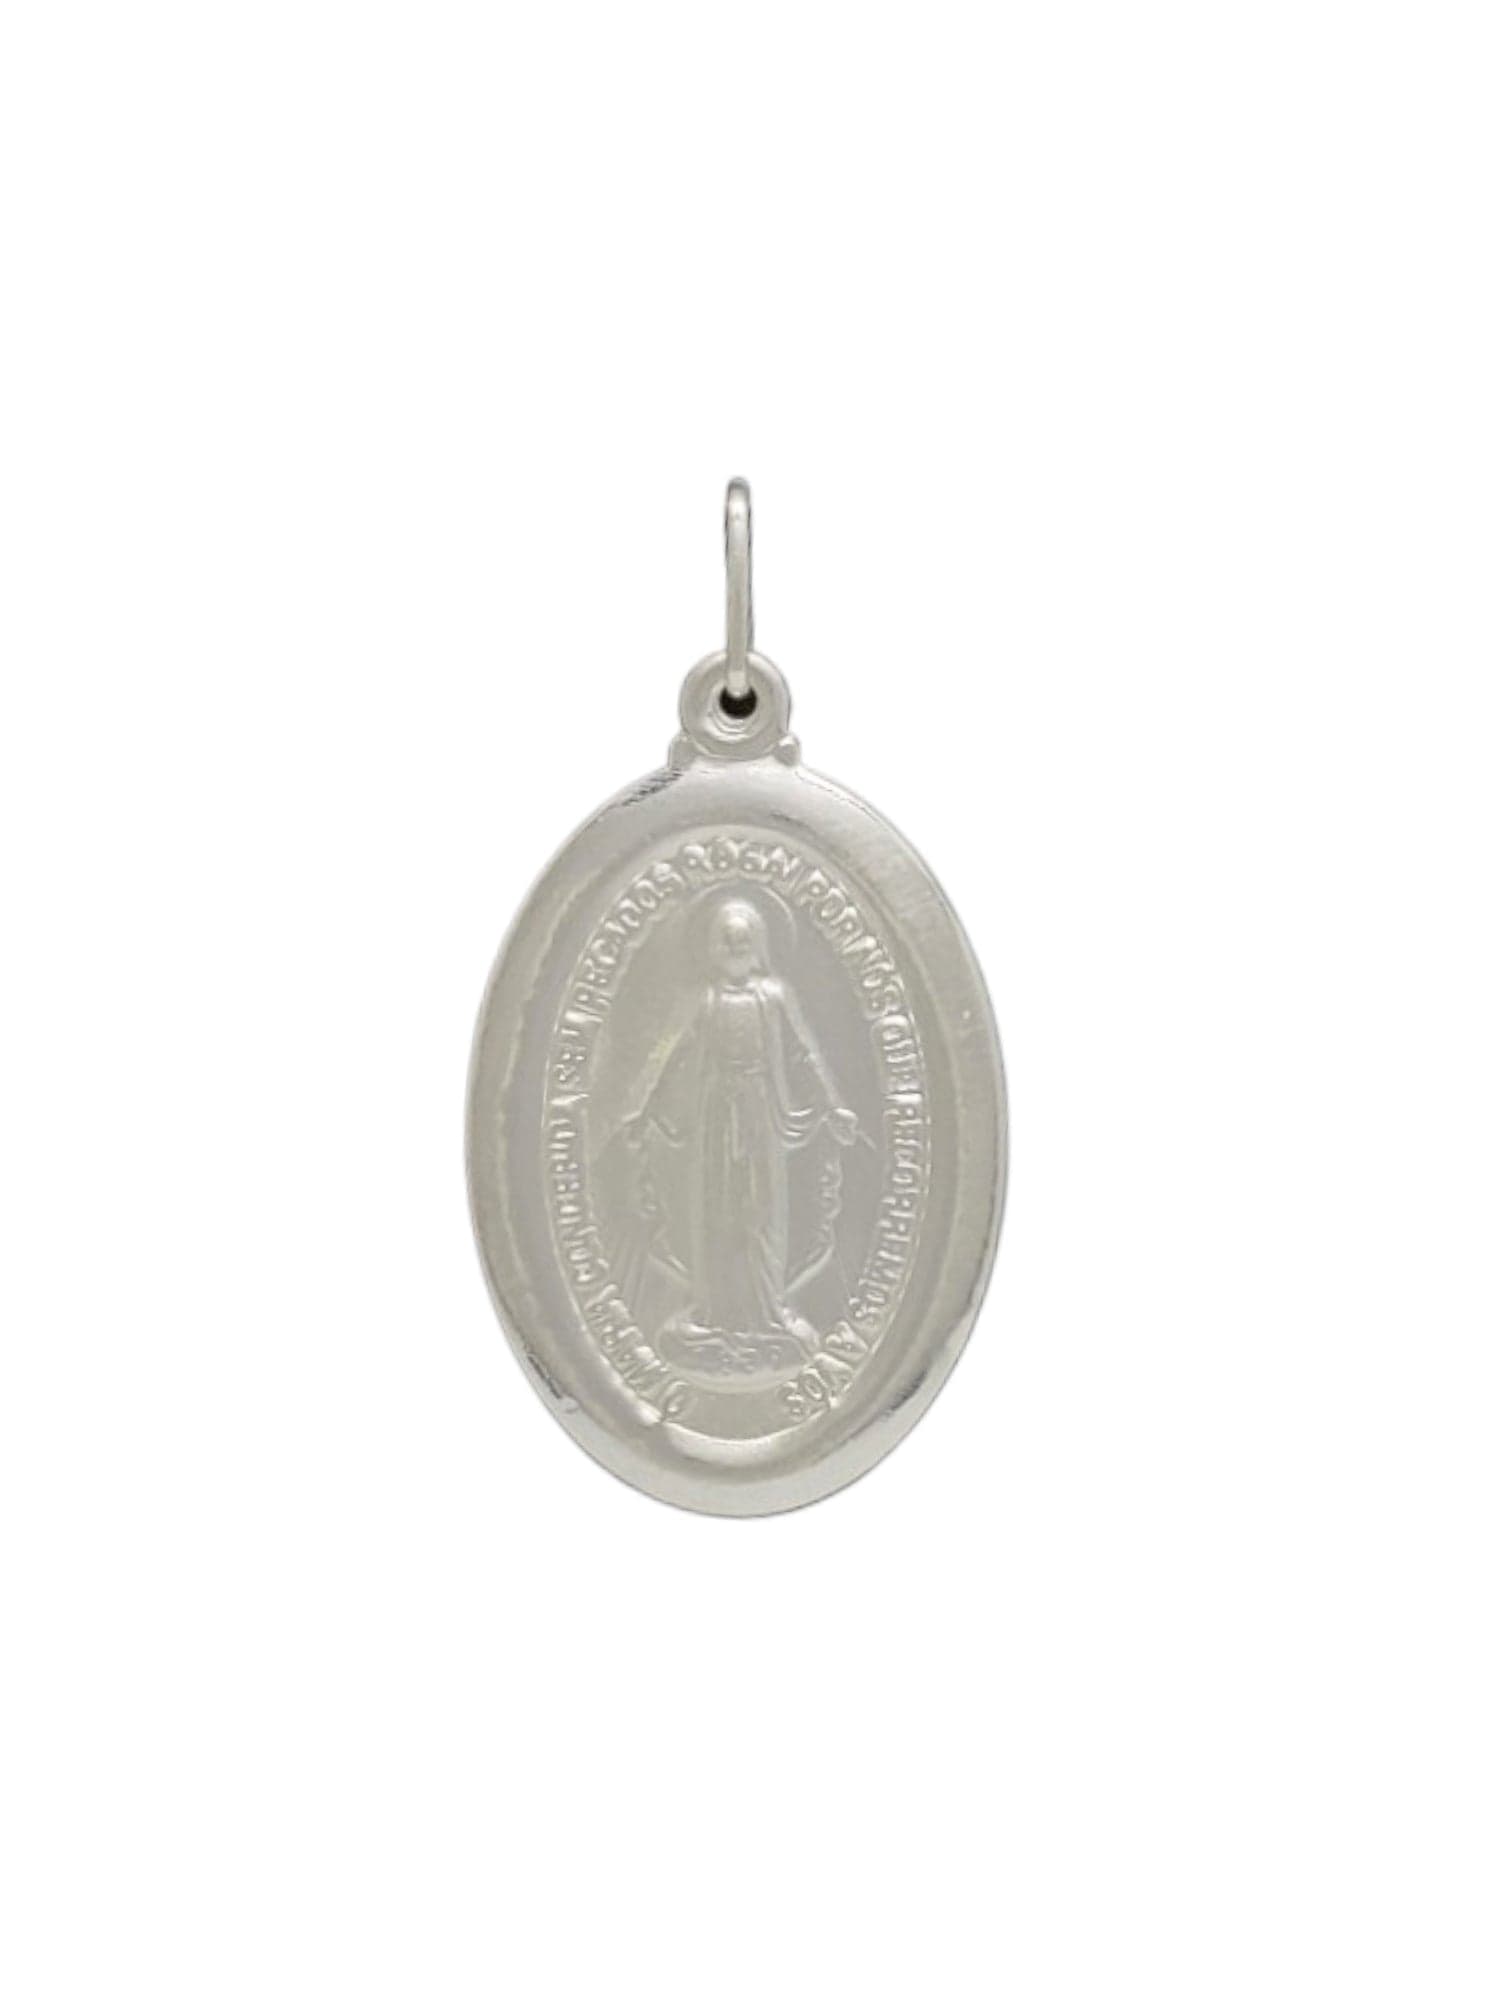 Medalha Milagrosa de Nossa Senhora das Graças em Prata de Lei 925-TerraCotta Arte Sacra